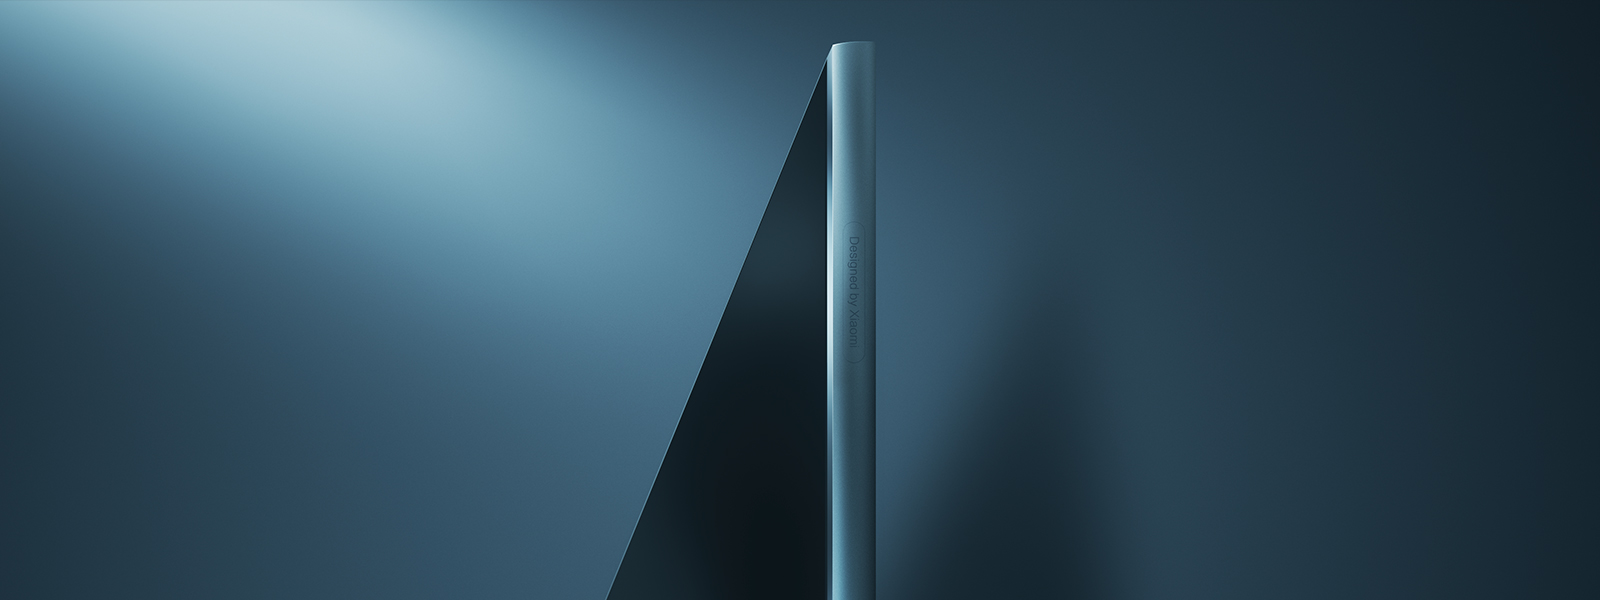 Thiết kế tràn màn hình trên Tivi Xiaomi E43S Pro